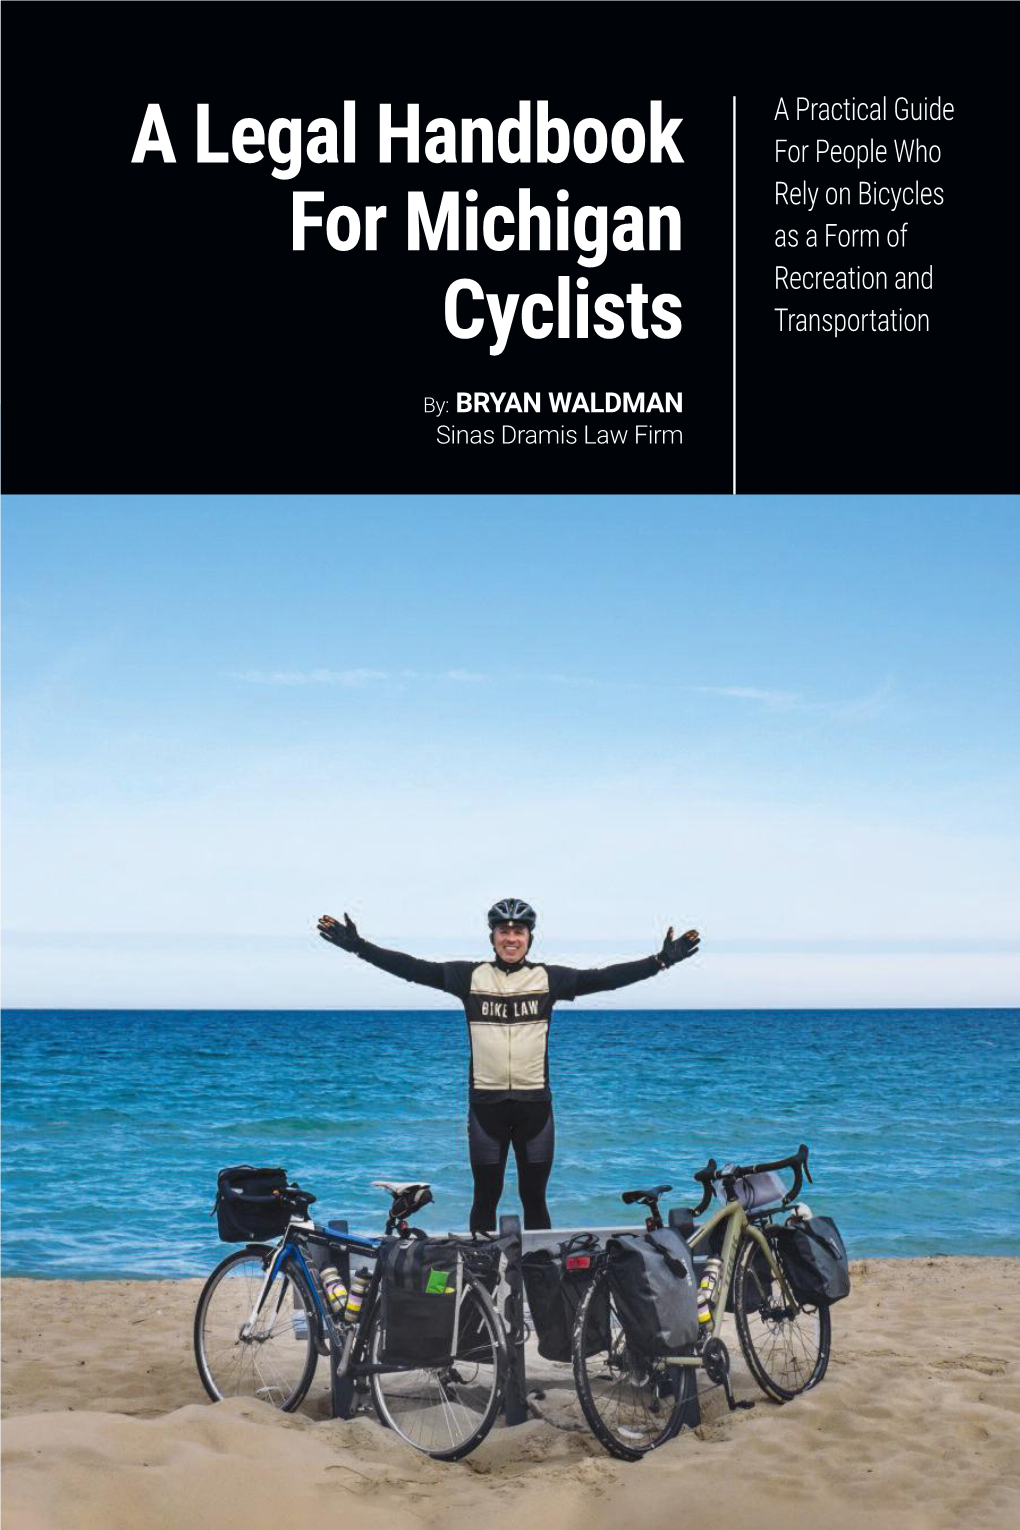 A Legal Handbook for Michigan Cyclists by BRYAN WALDMAN Sinas Dramis Law Firm